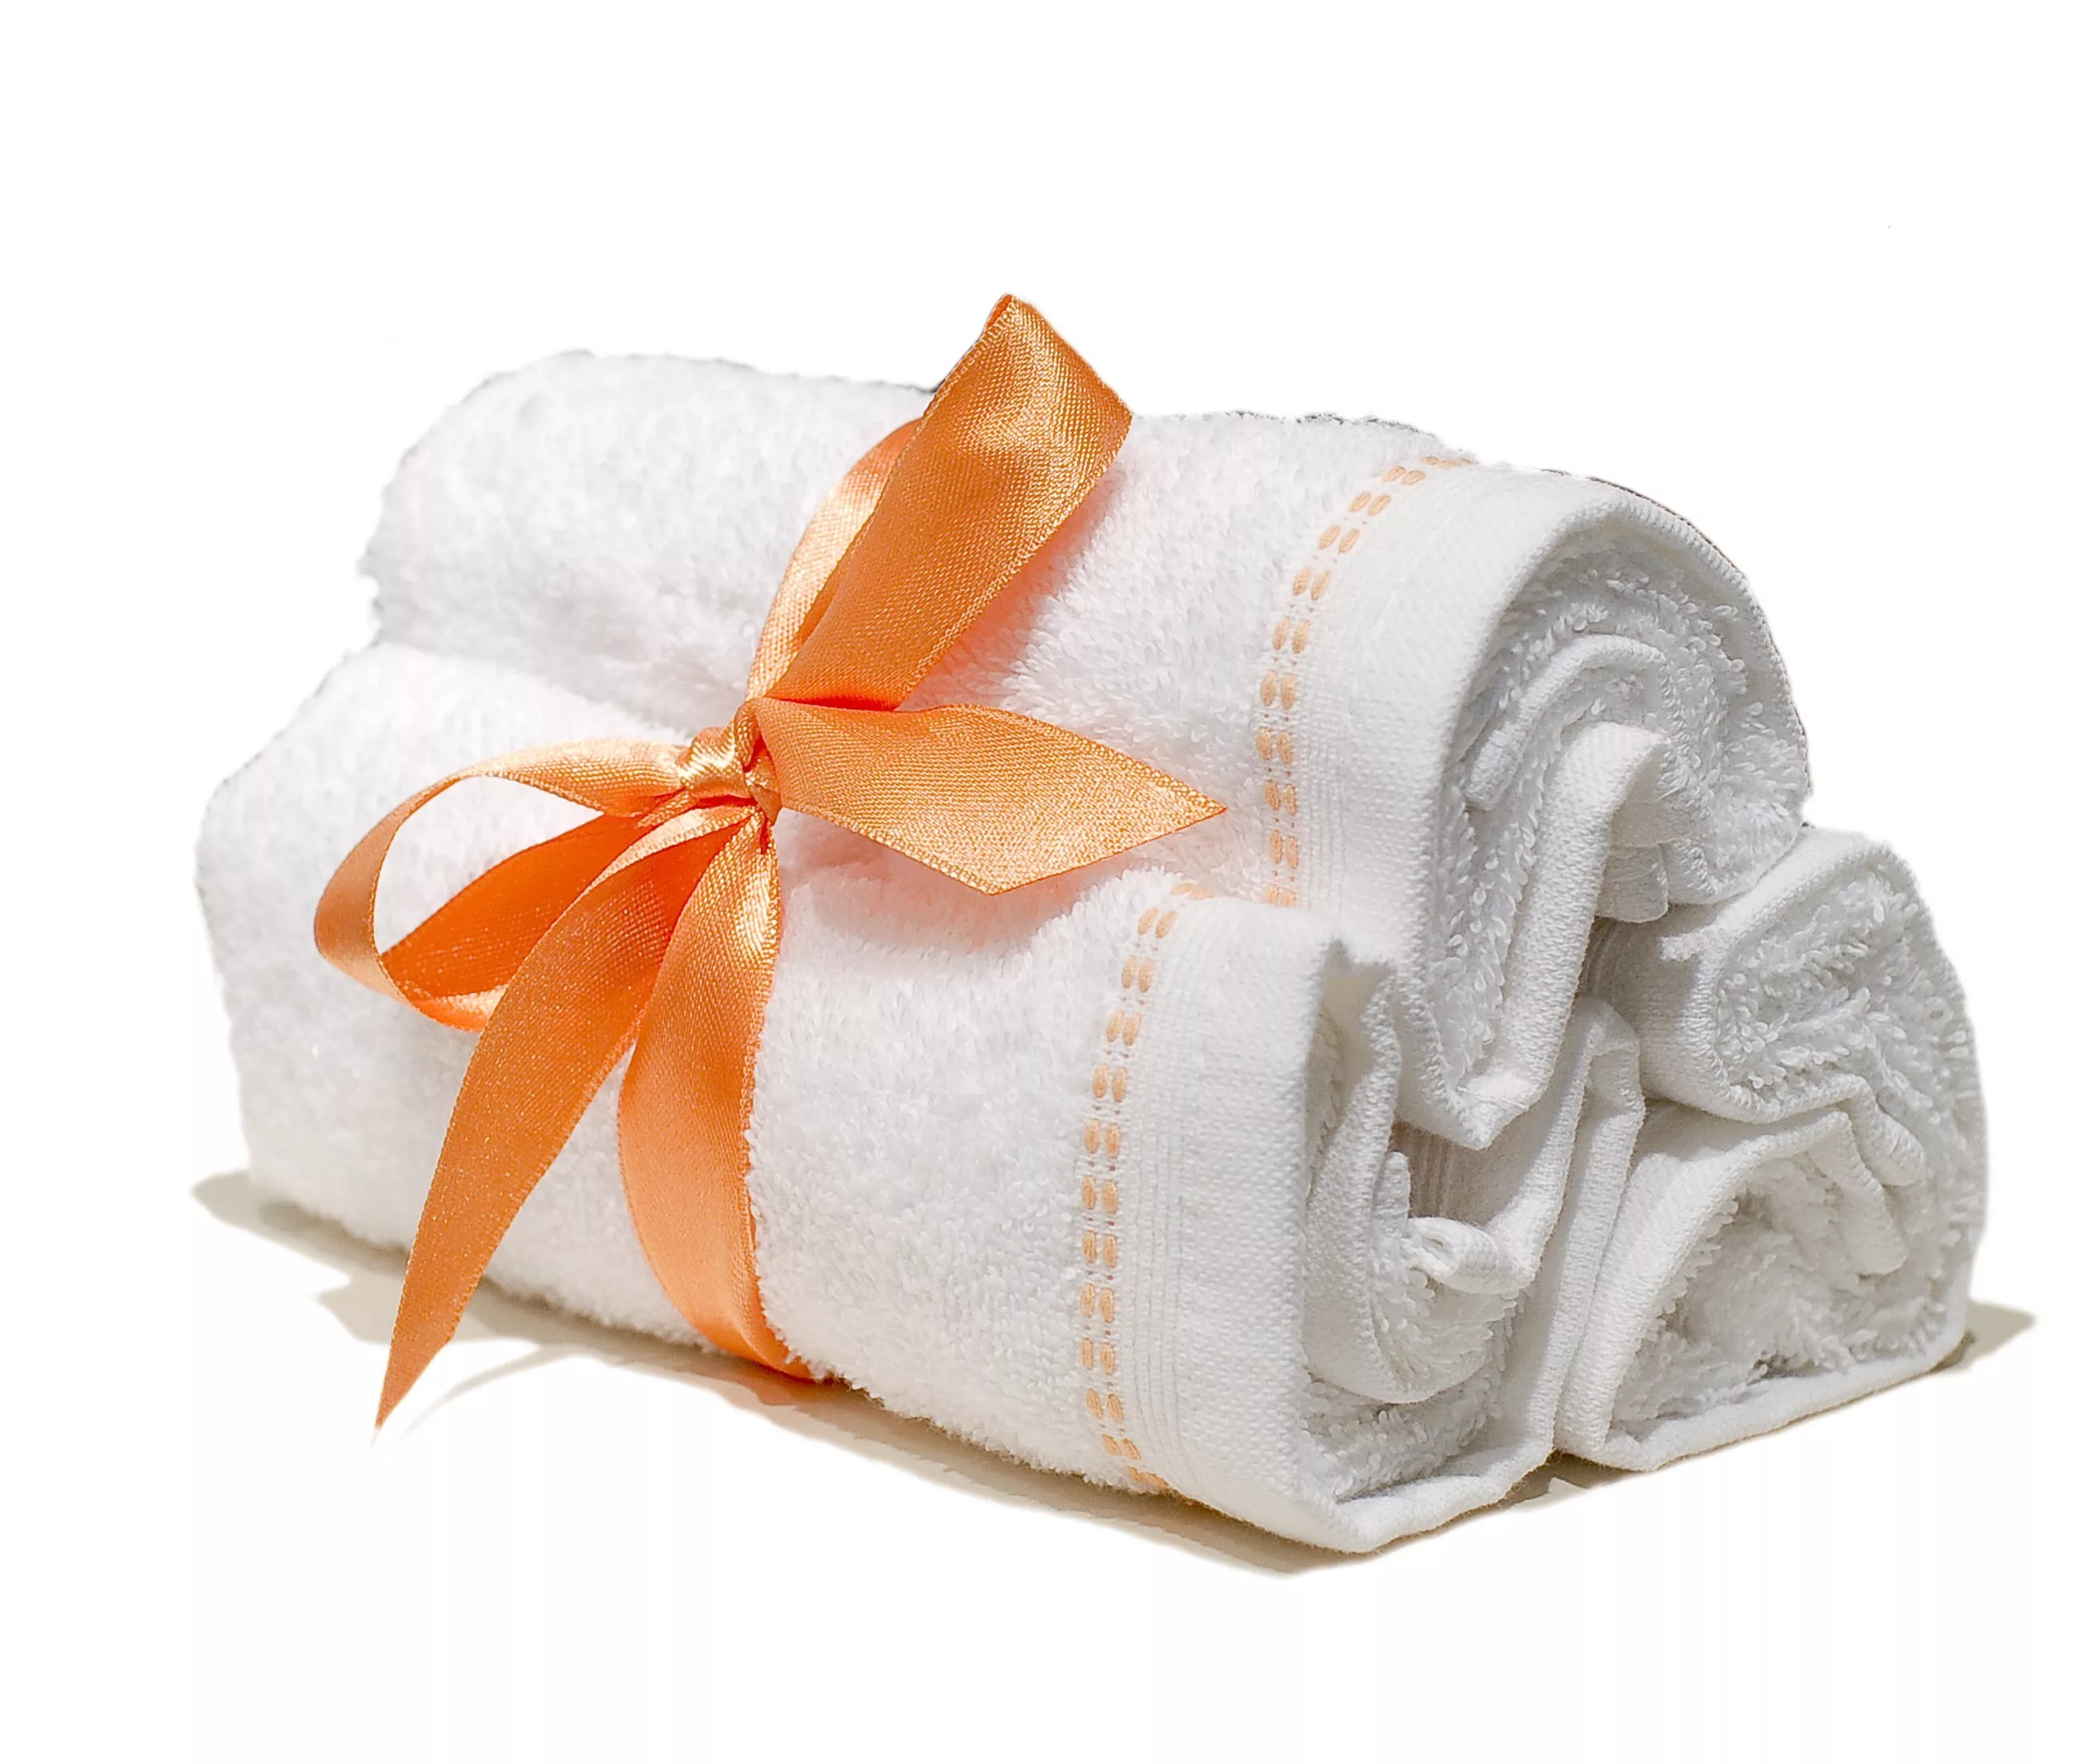 Обернутая полотенцем. Полотенце в подарок. Упаковка для полотенец. Красивые полотенца. Упаковка полотенца в подарок.